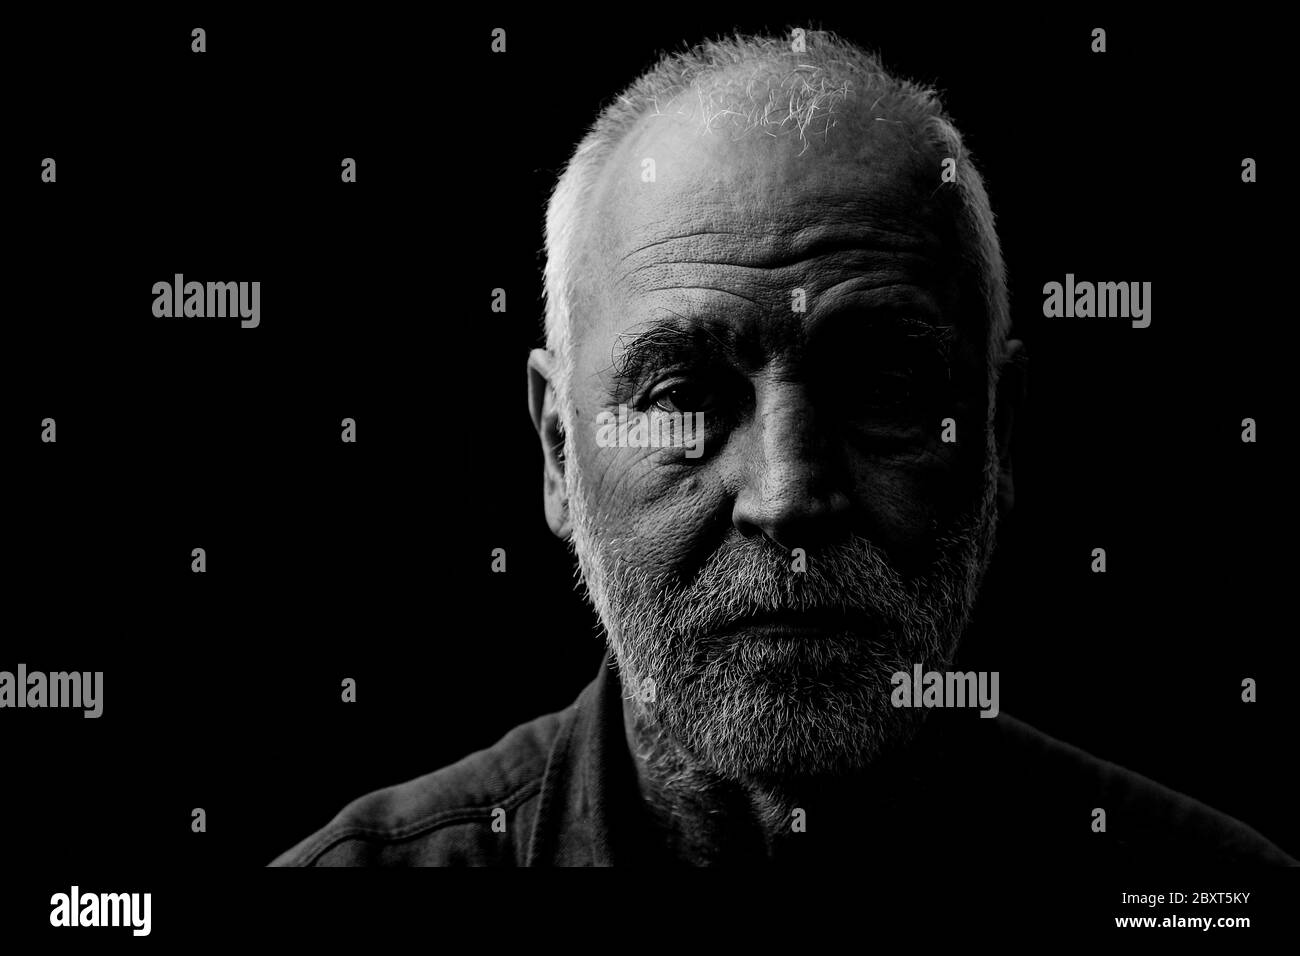 Ritratto in bianco e nero di un vecchio, segnato dalla vita, guardando attentamente nella fotocamera. Foto Stock